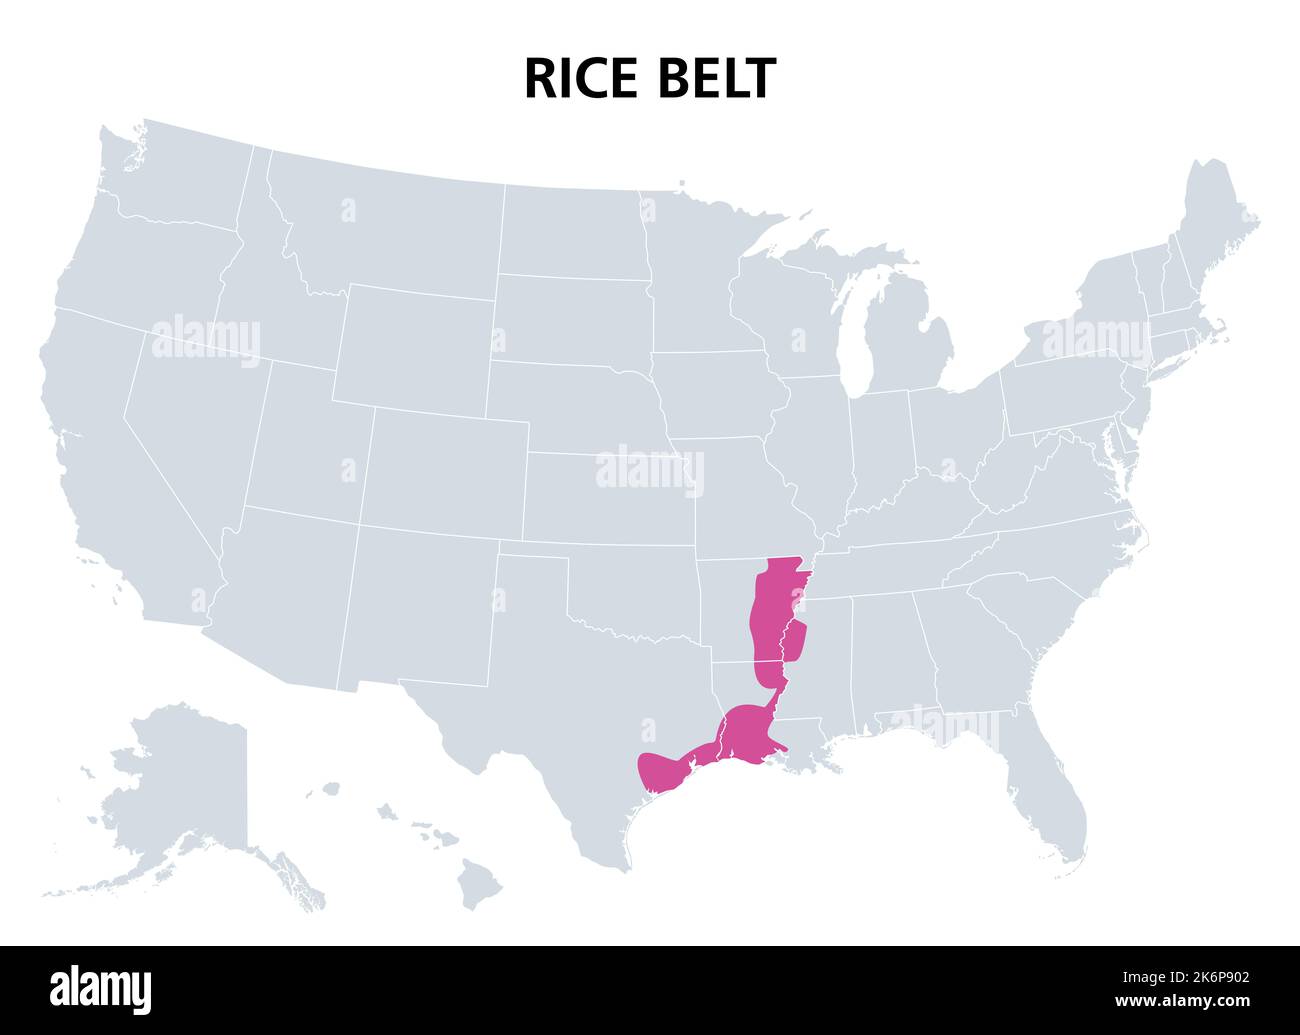 Rice Belt des États-Unis, carte politique. Région dans le sud des États américains, qui cultivent une partie importante de la récolte de riz des nations. Banque D'Images